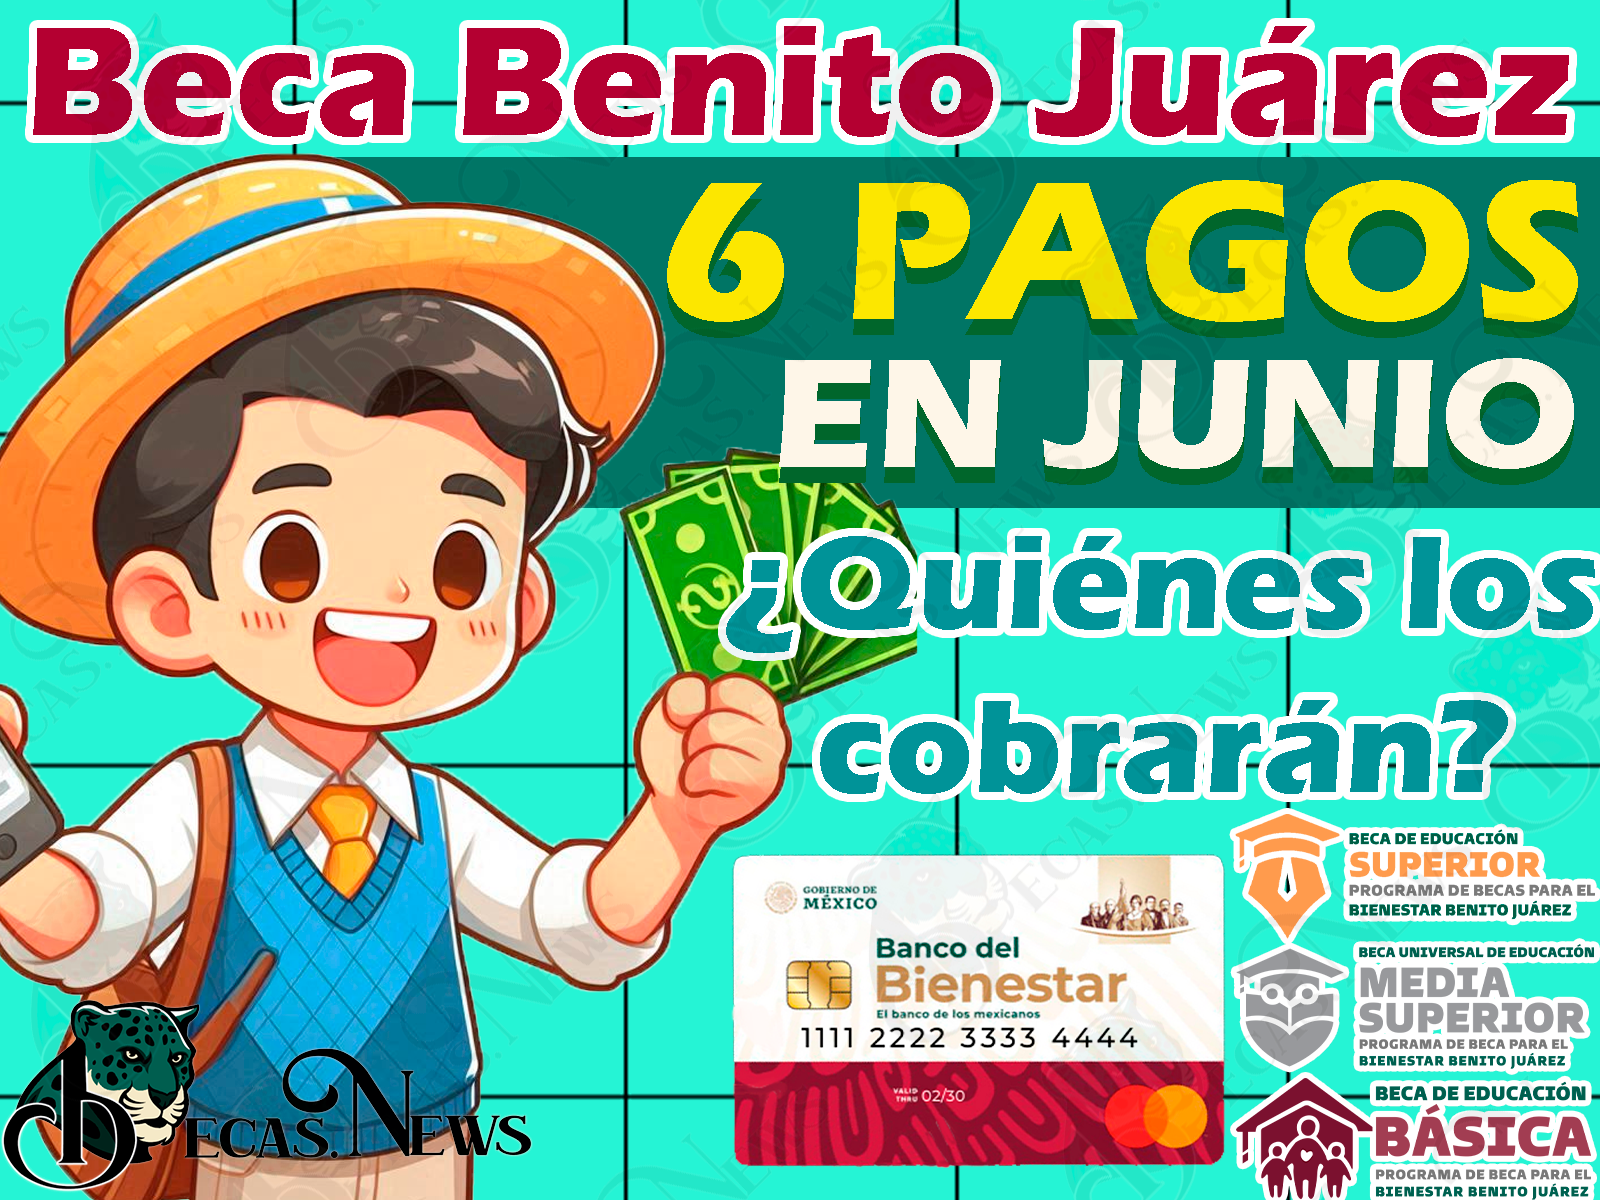 Recibirás 6 PAGOS de las Becas Benito Juárez en el mes de Junio. ¿Quiénes los recibirán y por qué?